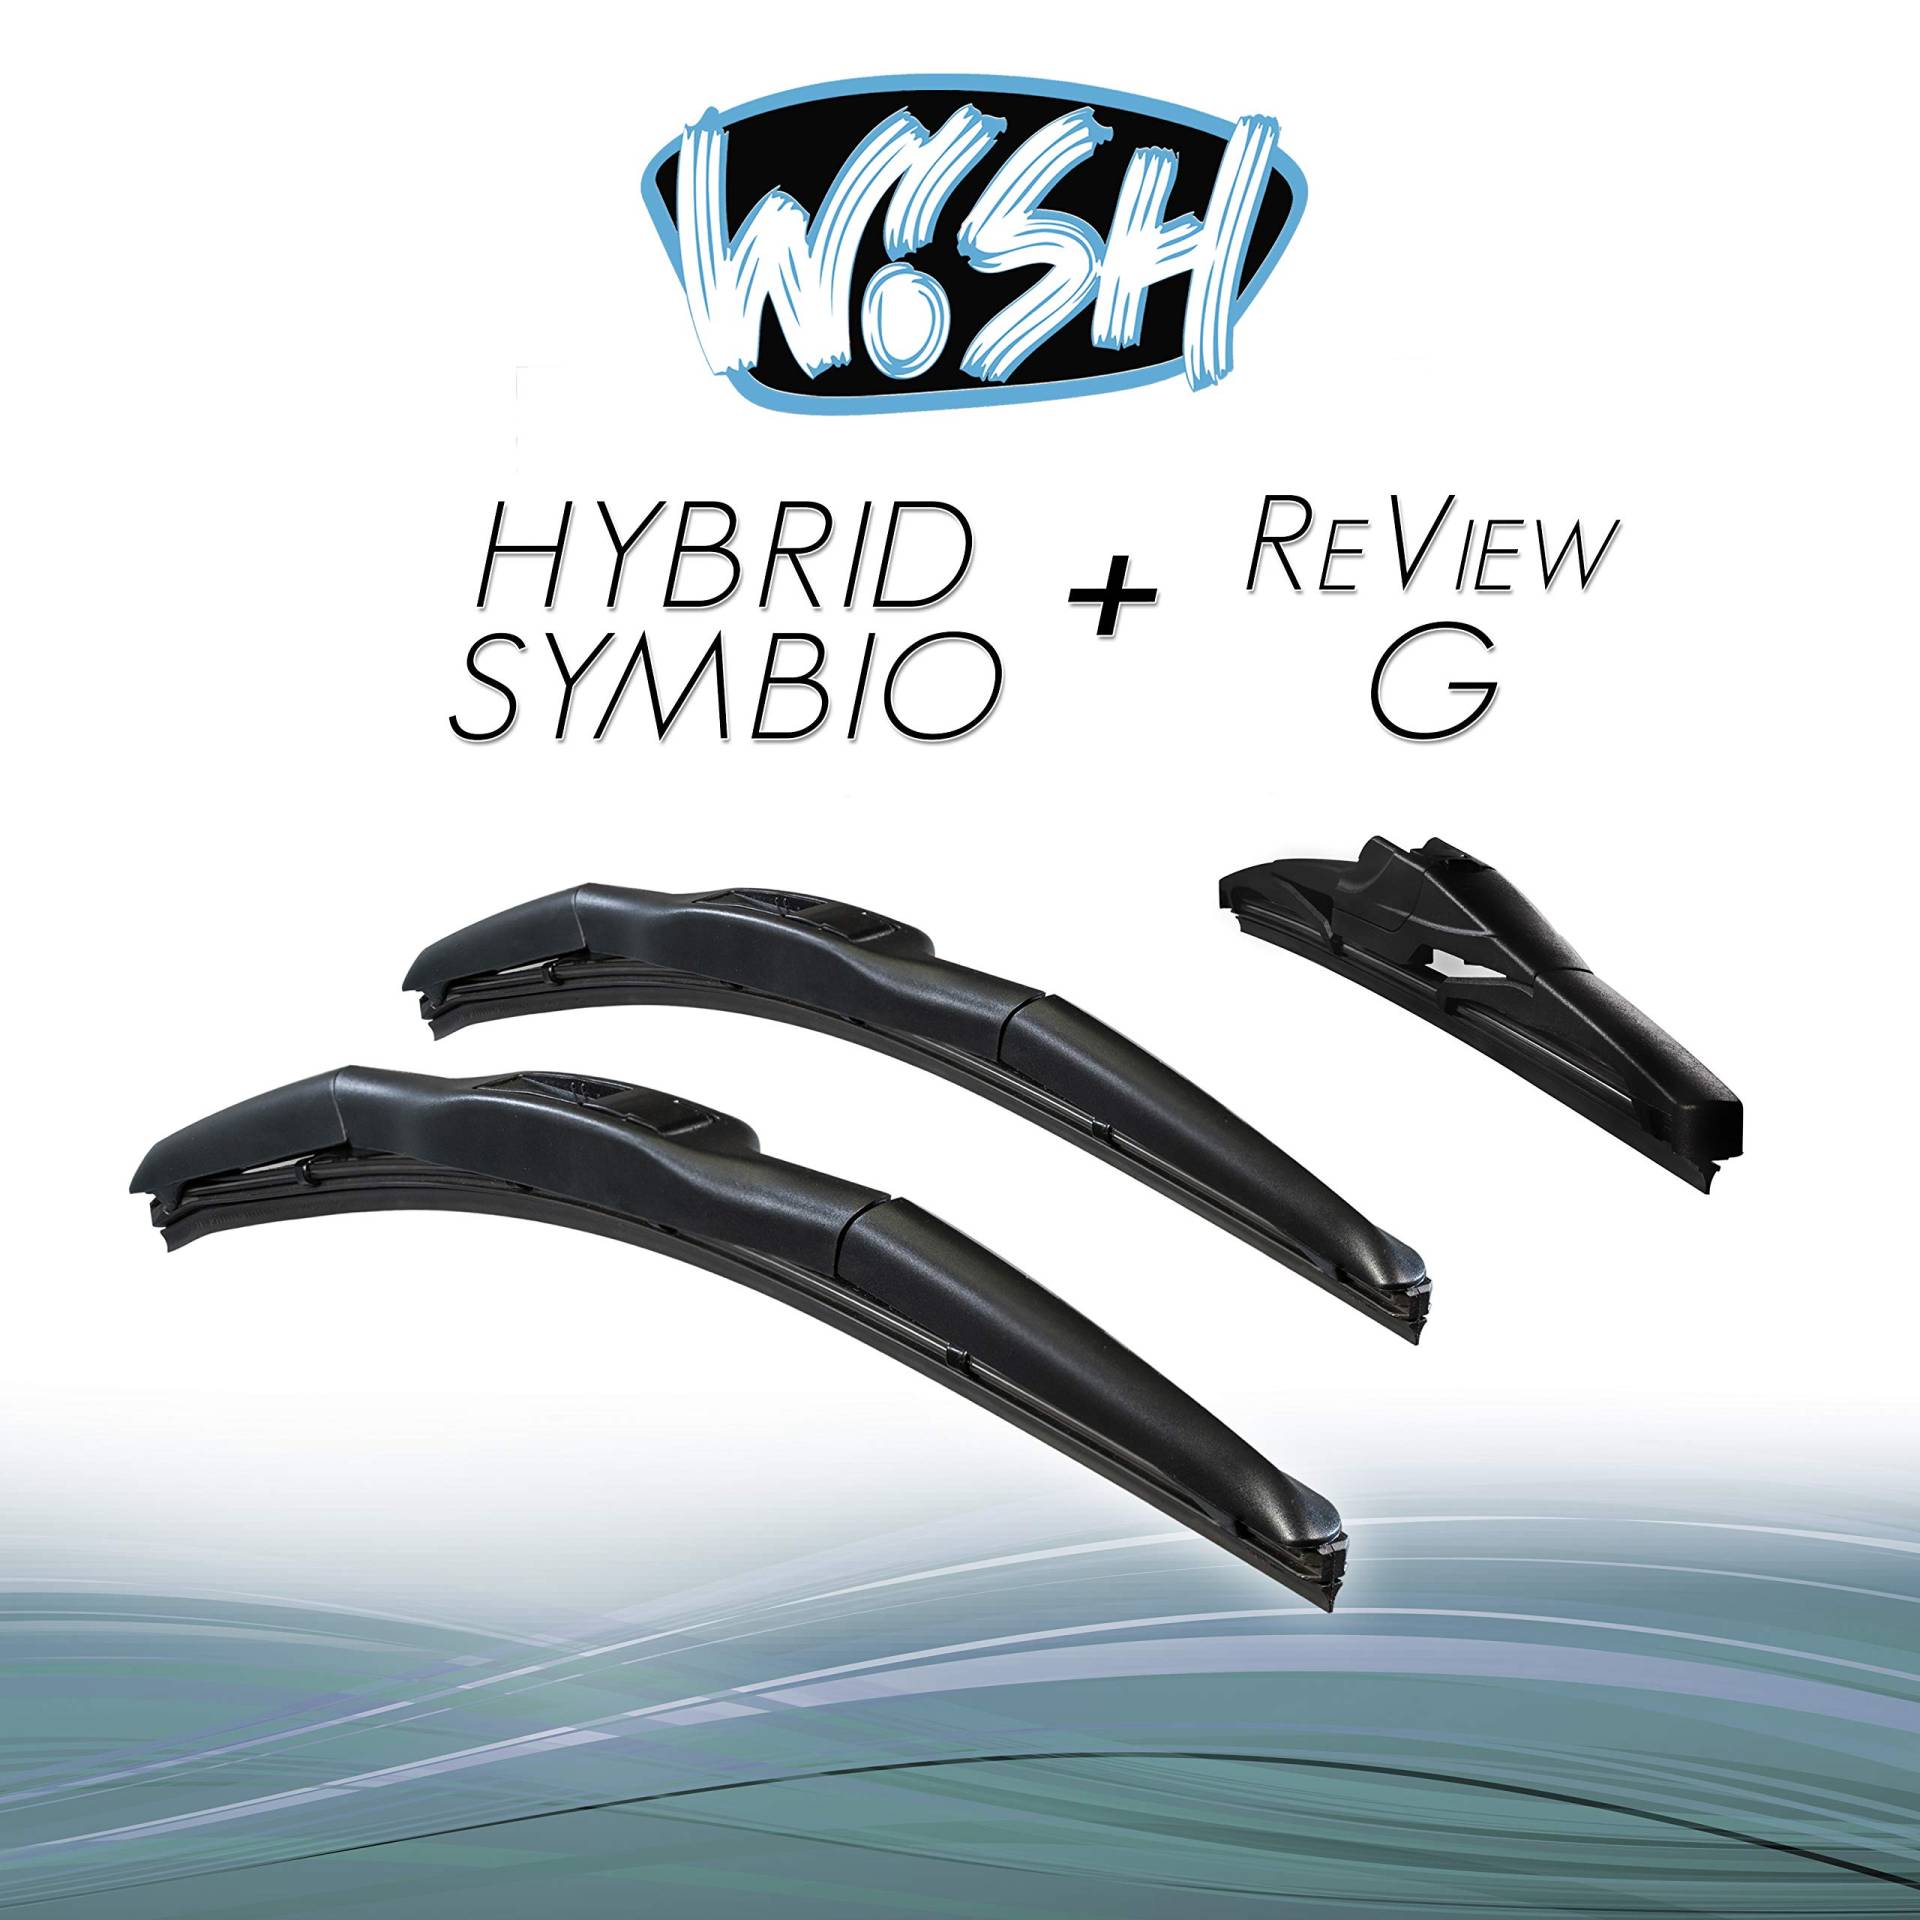 Wish® Hybrid Symbio Satz Front + Heck Scheibenwischer Länge: 26" 650mm / 14" 350mm / 14" 350mm Wischblätter Vorne und Hinten Hybrid-Scheibenwischer + Review G HS26.14.14RG von Wish